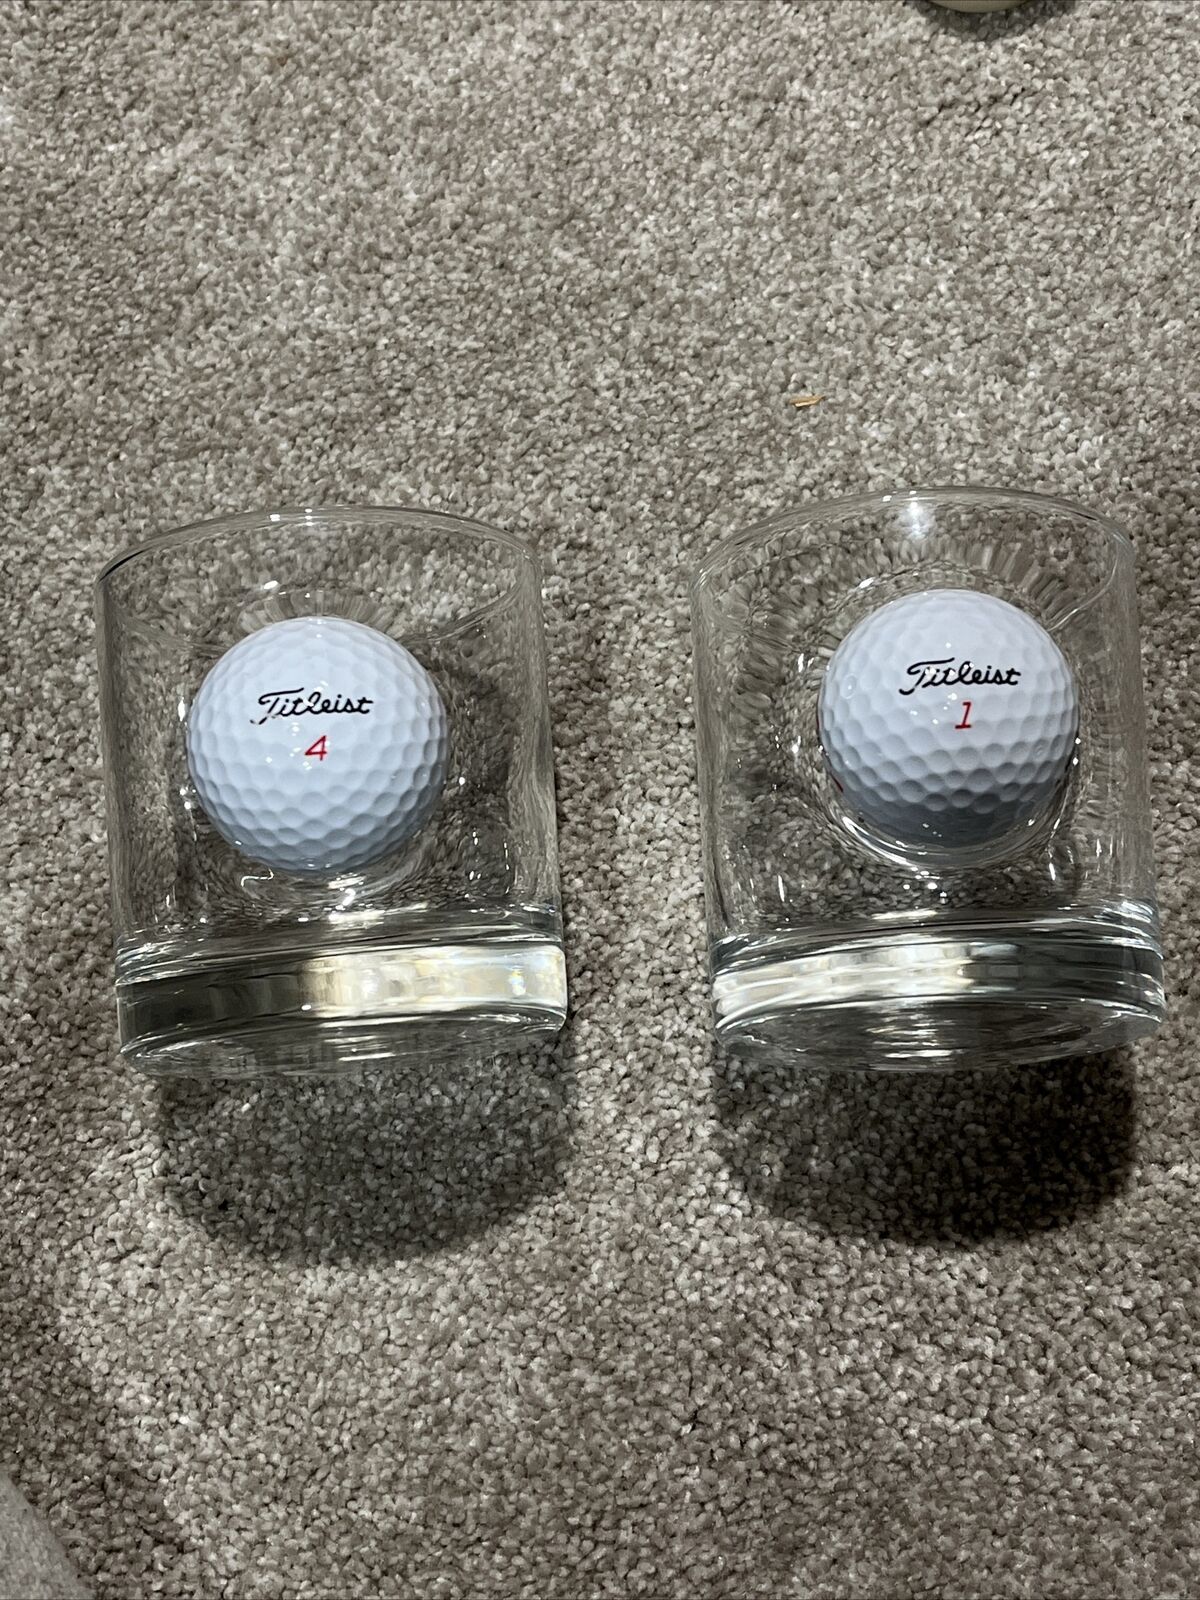 Benshot GOLF BALL 11 OZ Rocks Glasses Titleist 4 & 1 Golf Balls  USA (A)